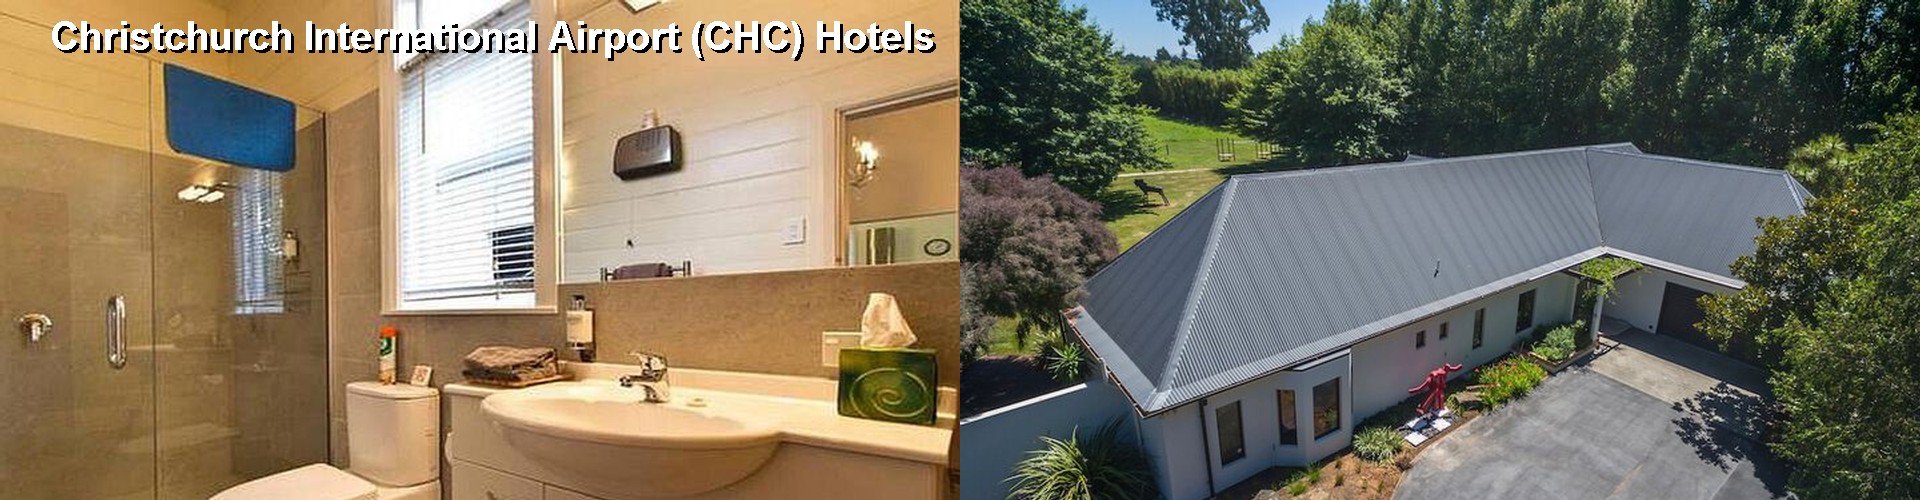 5 Best Hotels near Christchurch International Airport (CHC)